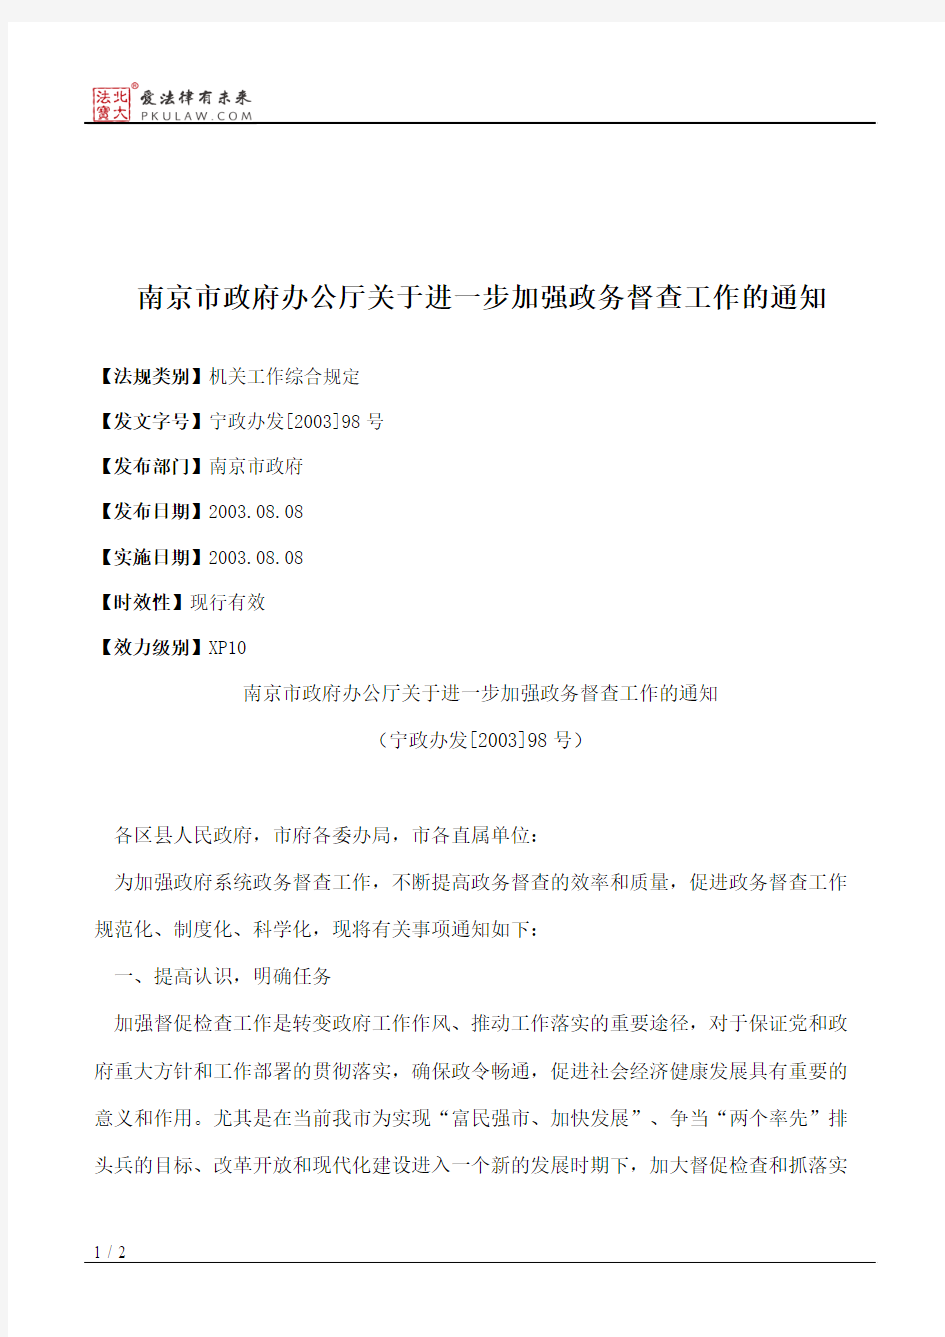 南京市政府办公厅关于进一步加强政务督查工作的通知